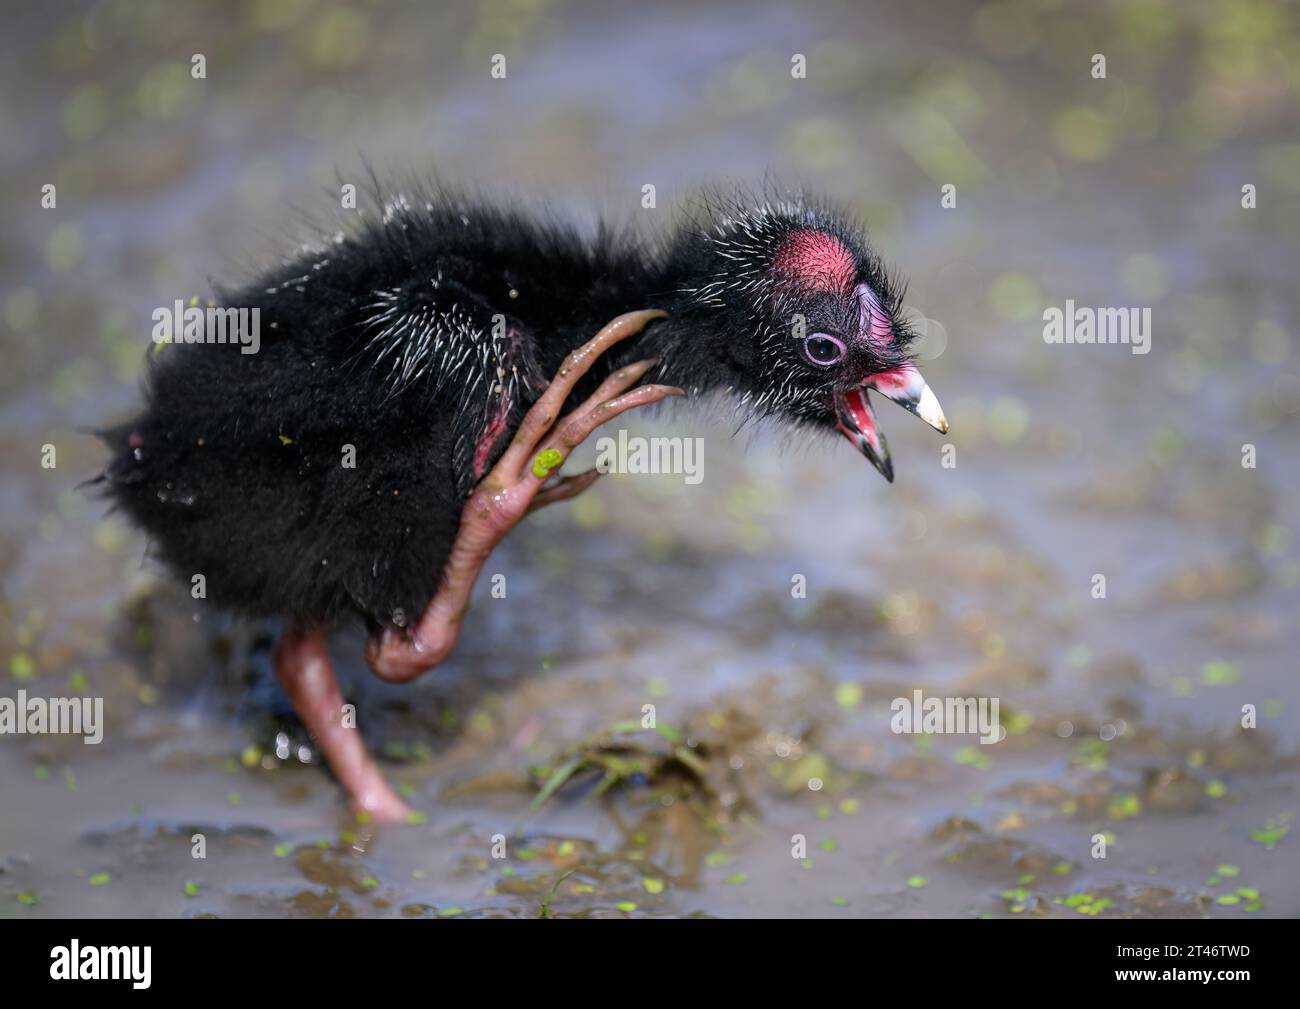 Baby Pukeko bird scratching itself. Auckland. Stock Photo